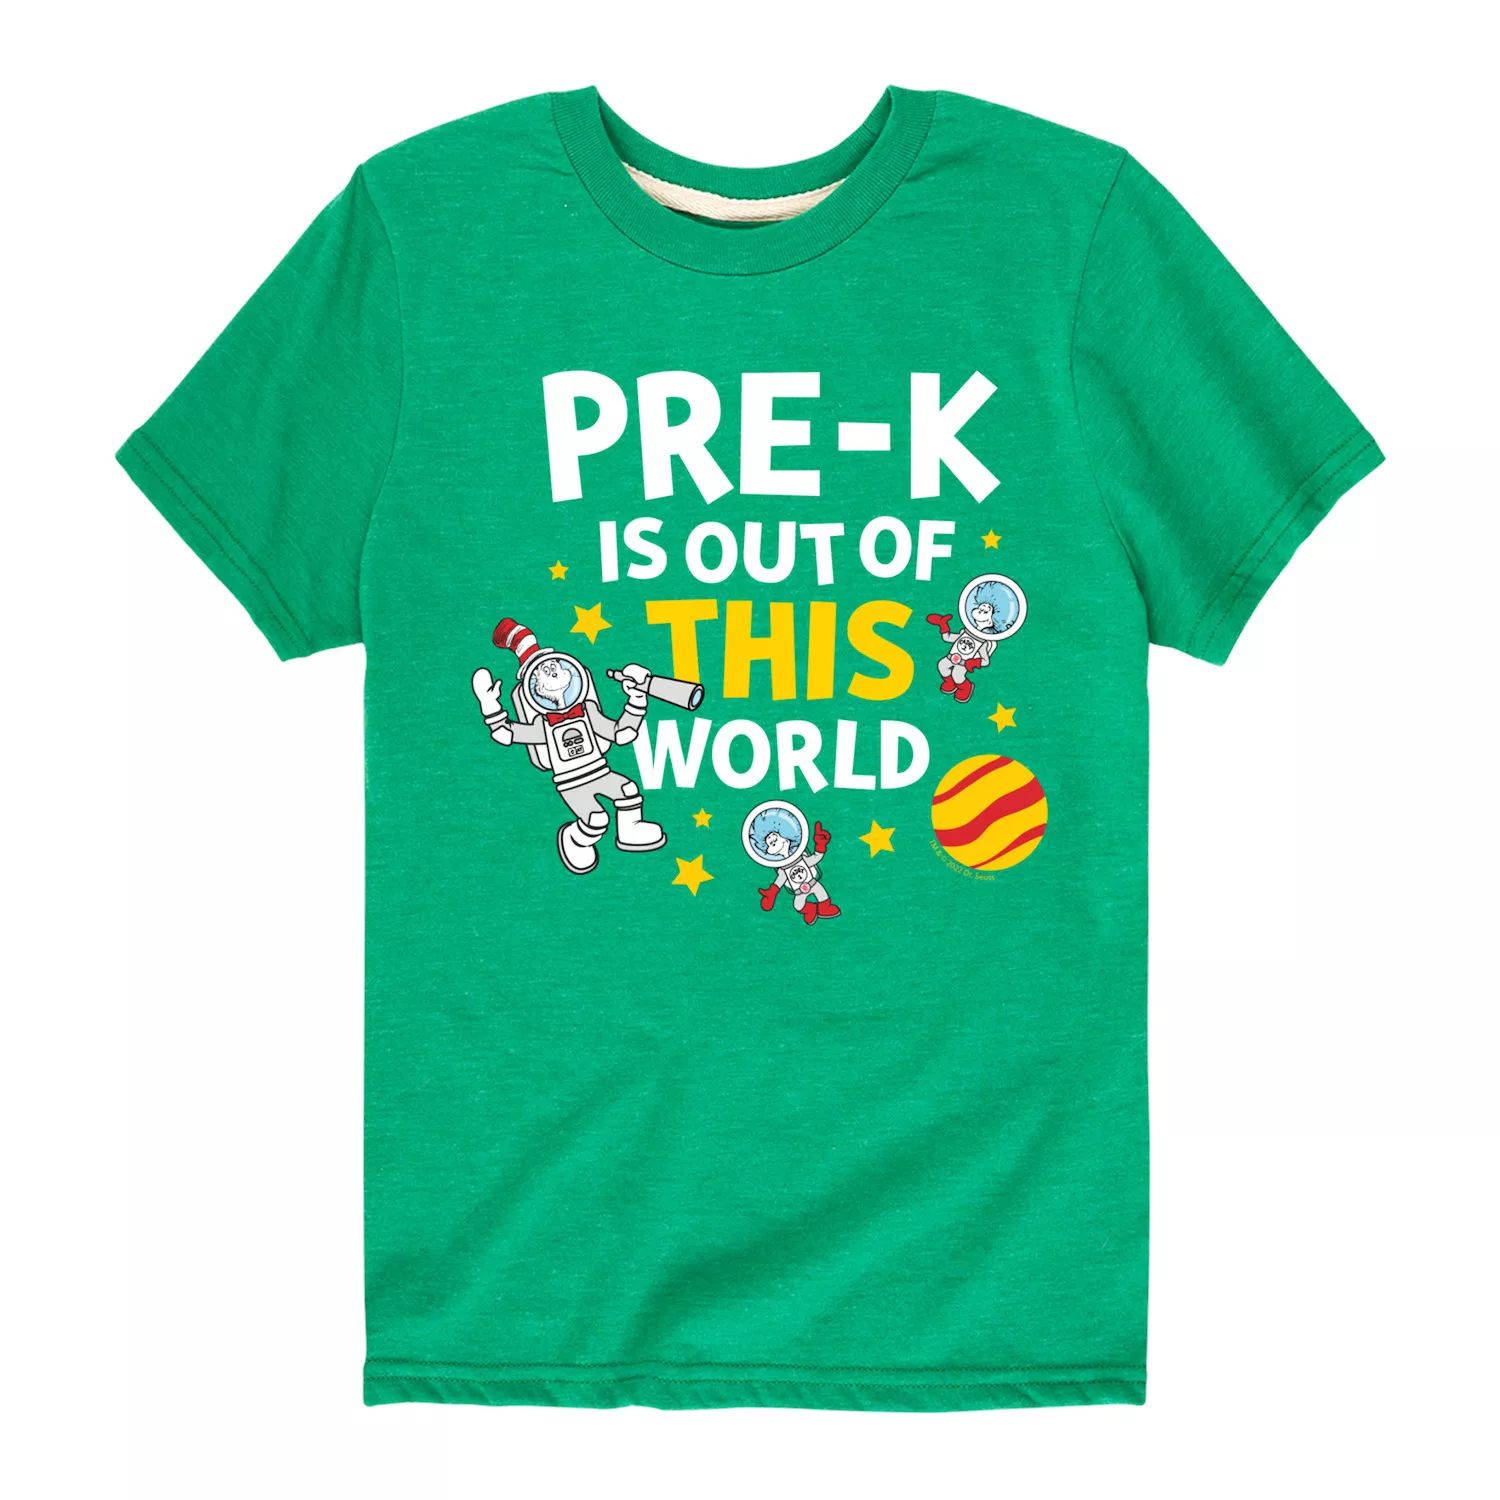 Футболка с космическим рисунком для Pre-K «Доктор Сьюз» для мальчиков 8–20 лет Licensed Character, зеленый